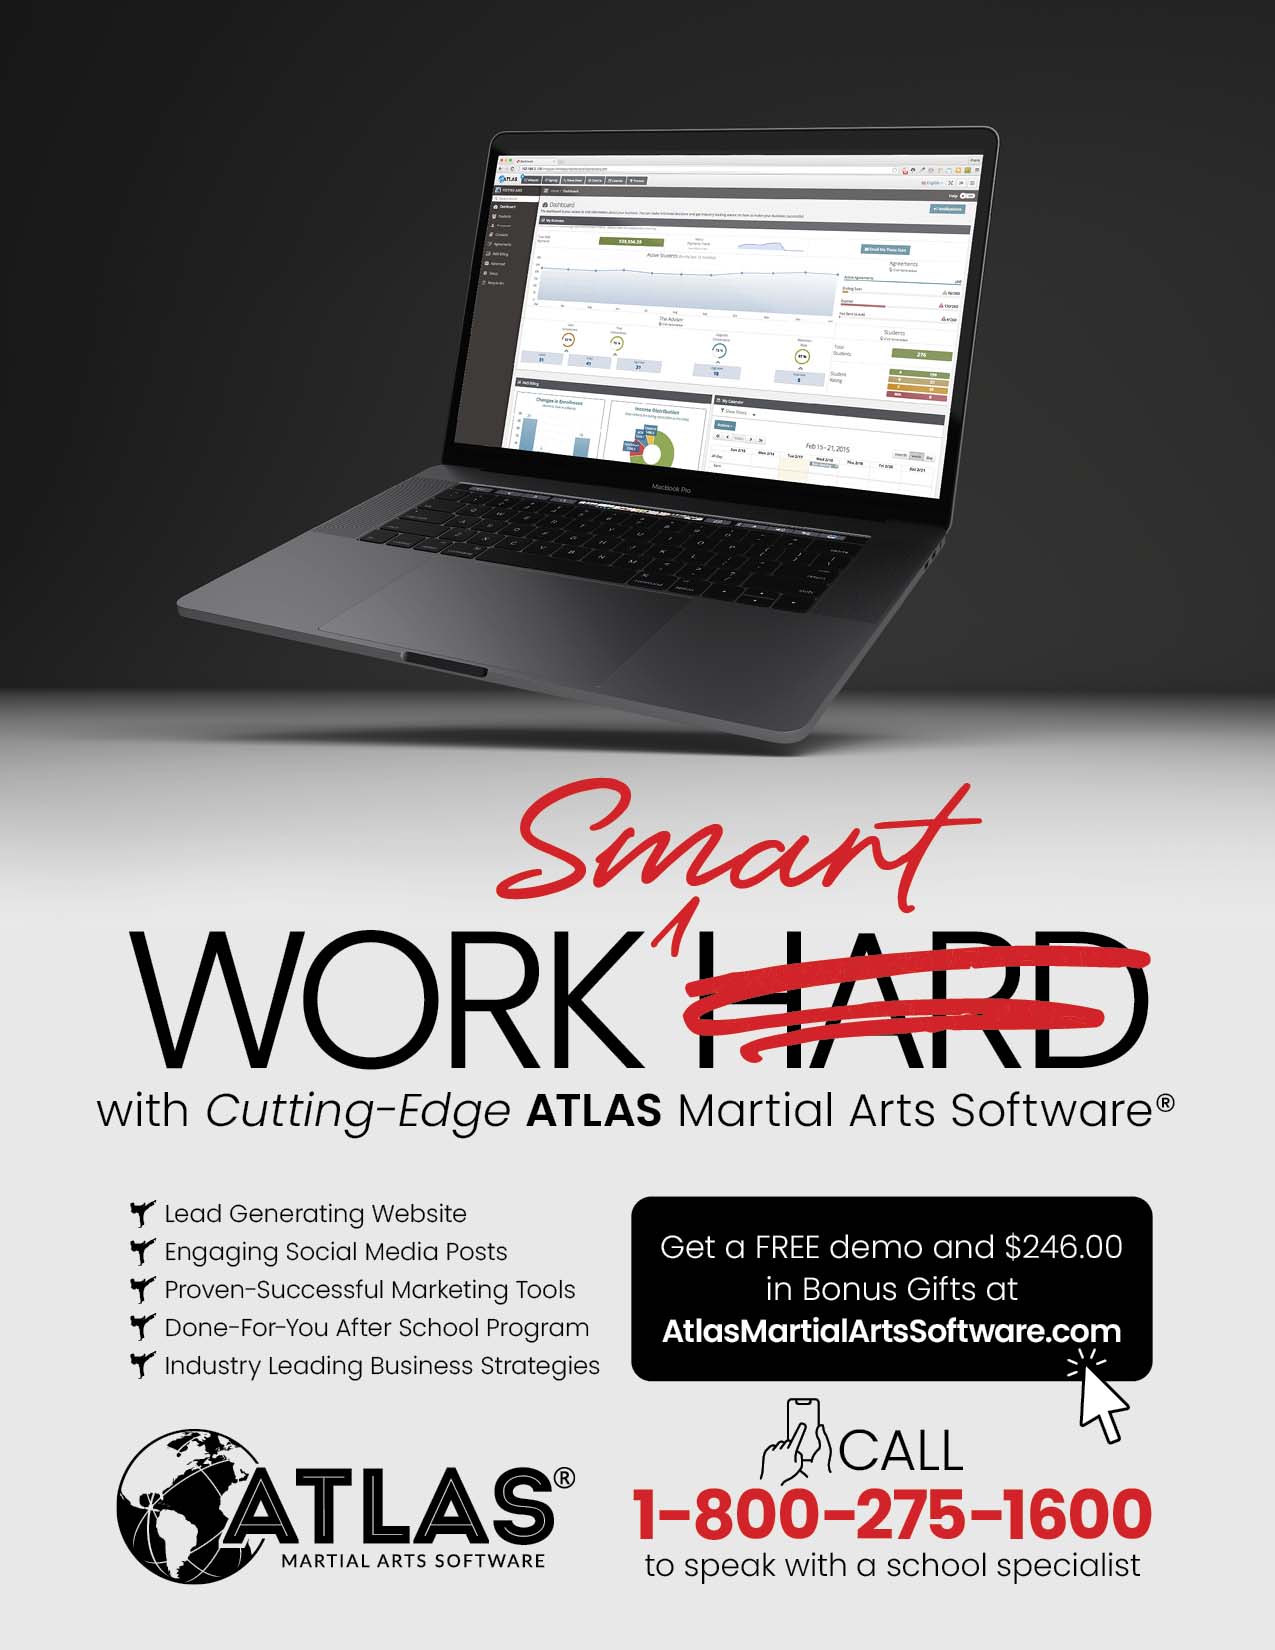 ATLAS Martial Arts Software